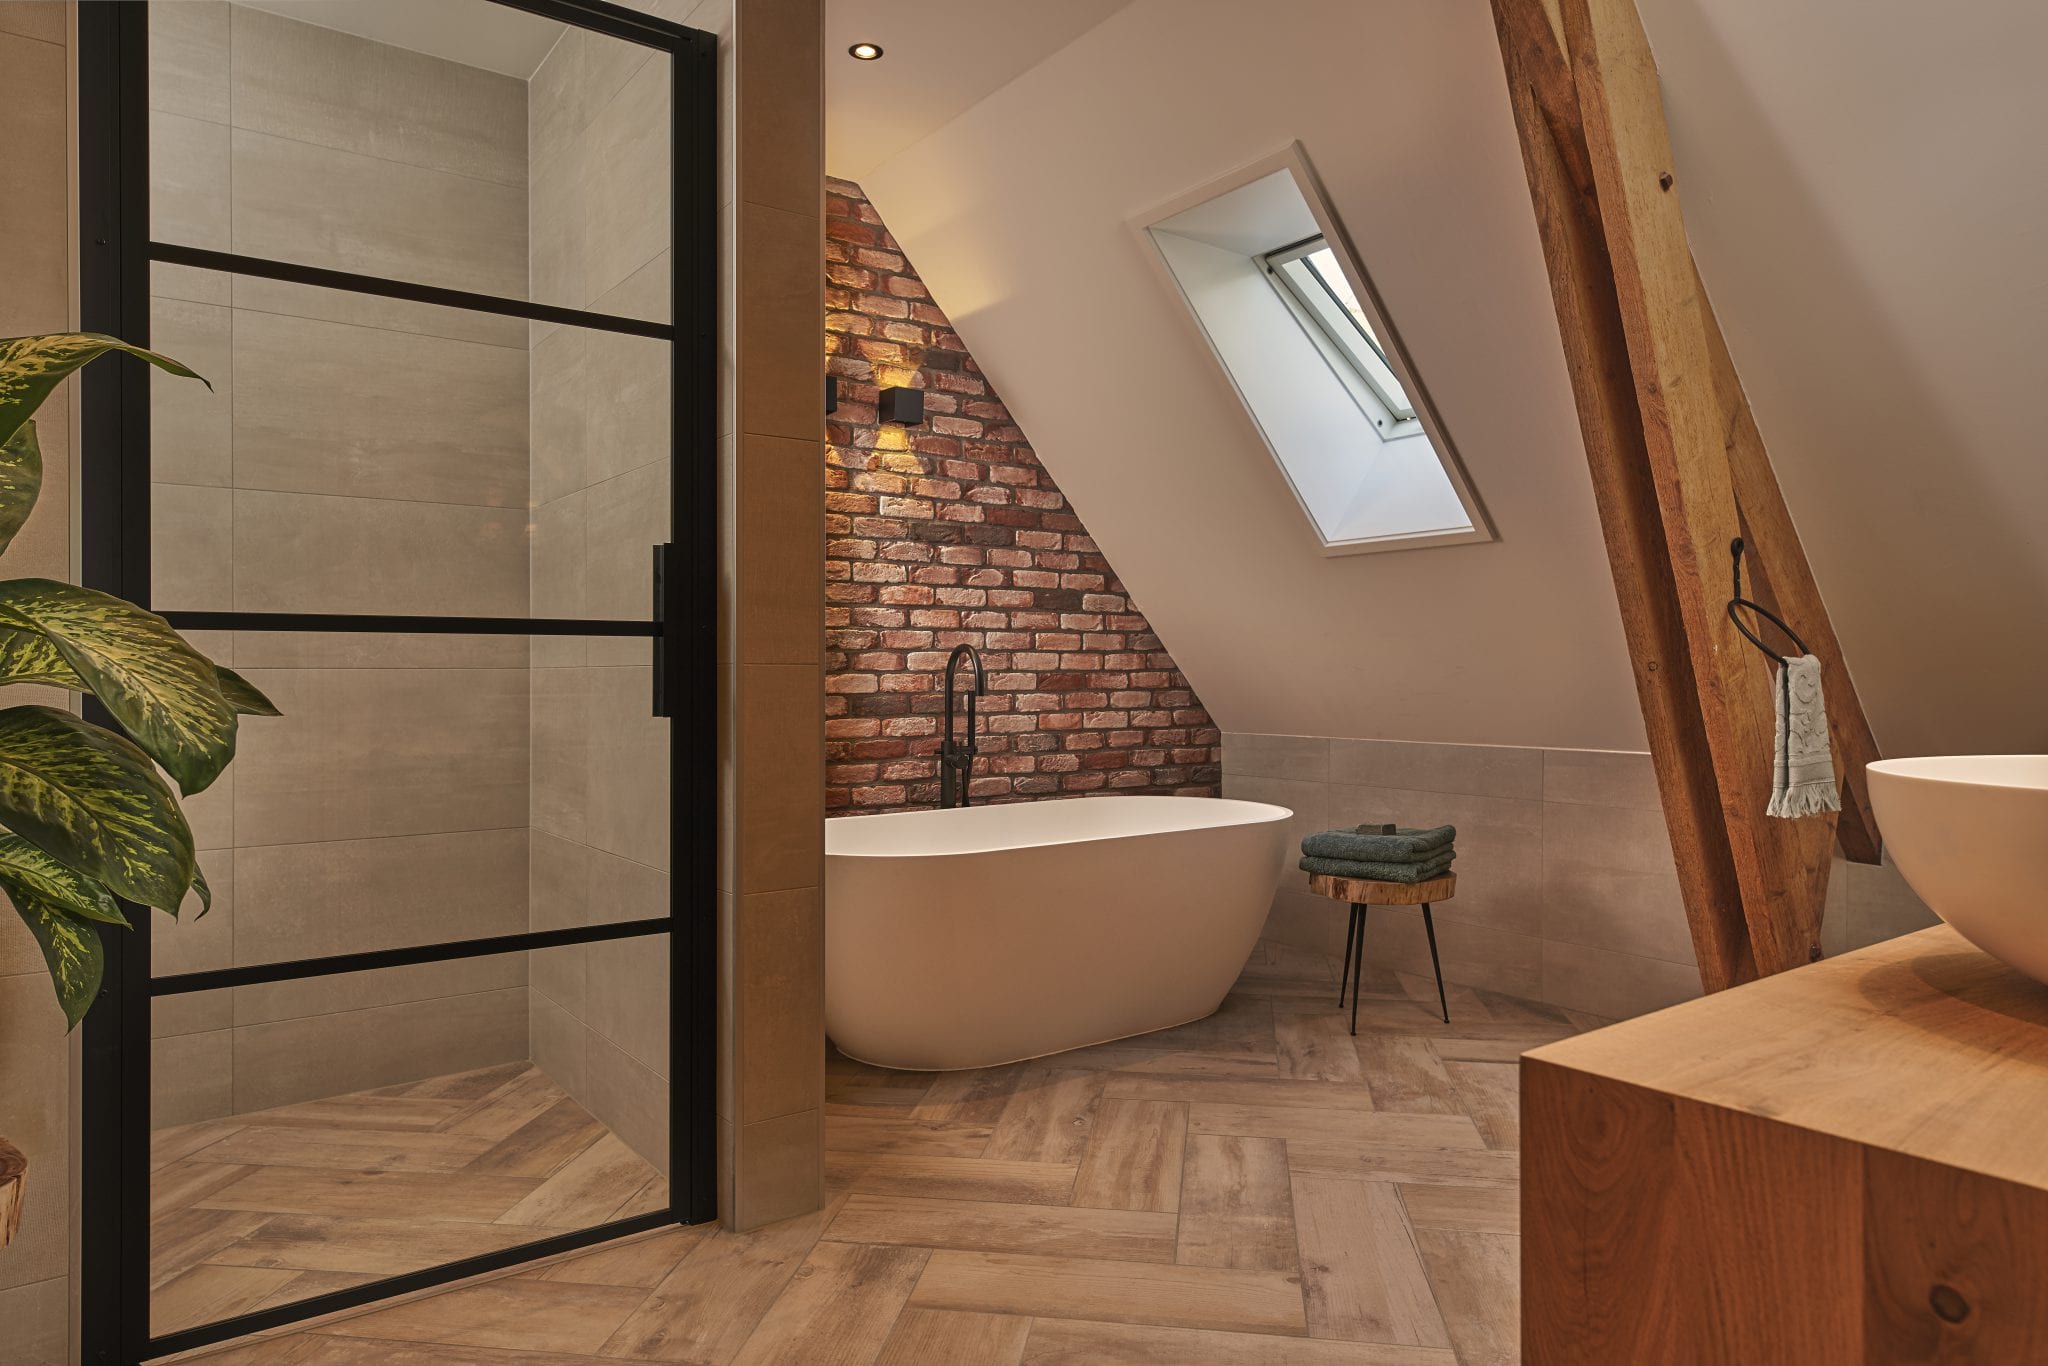 Badkamer met hout en vrijstaand bad